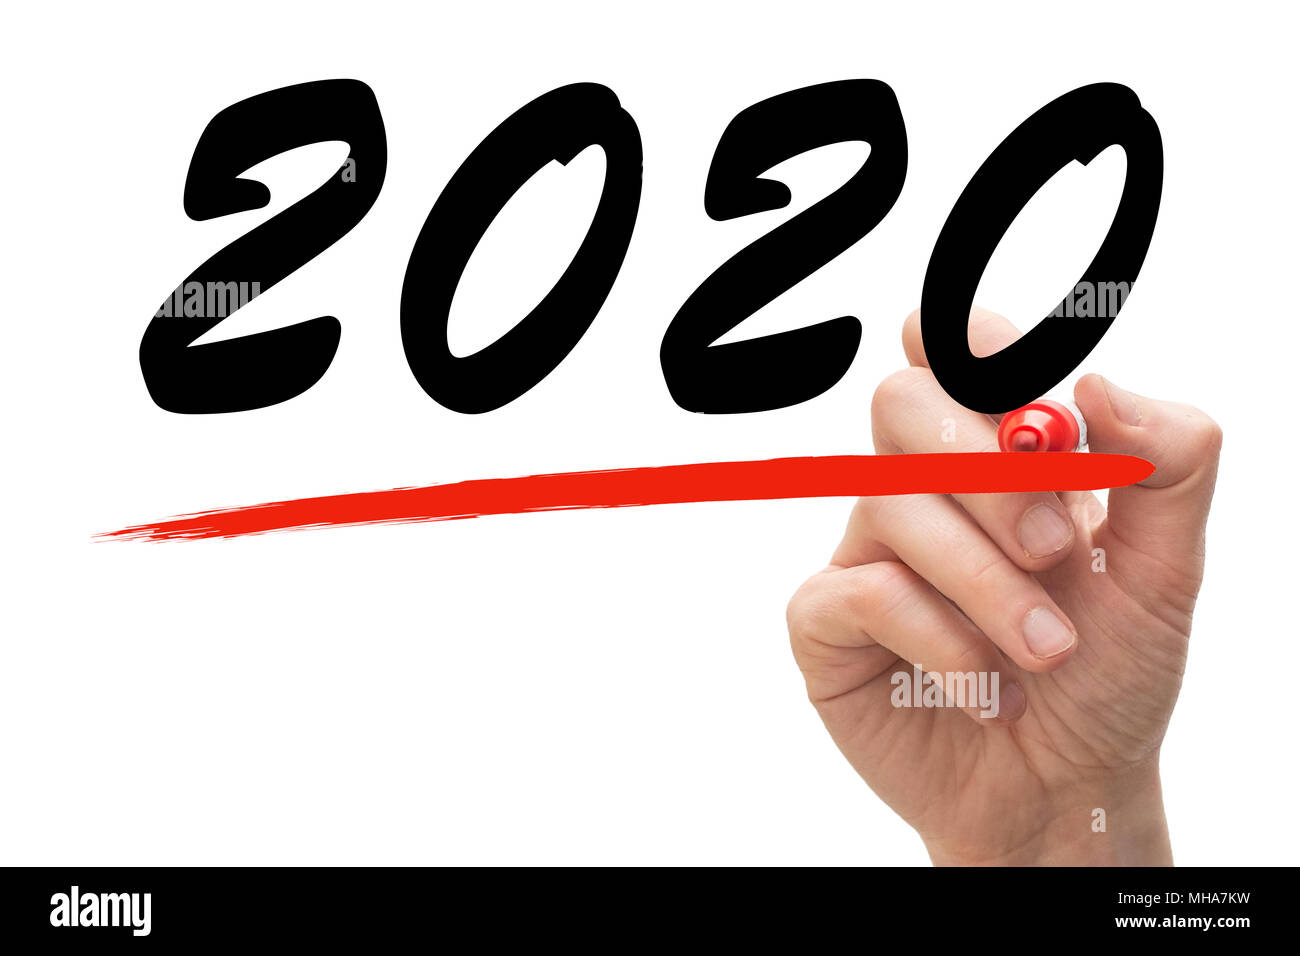 Disegno a mano una linea rossa sotto l'anno 2020. Immagine concettuale. Foto Stock